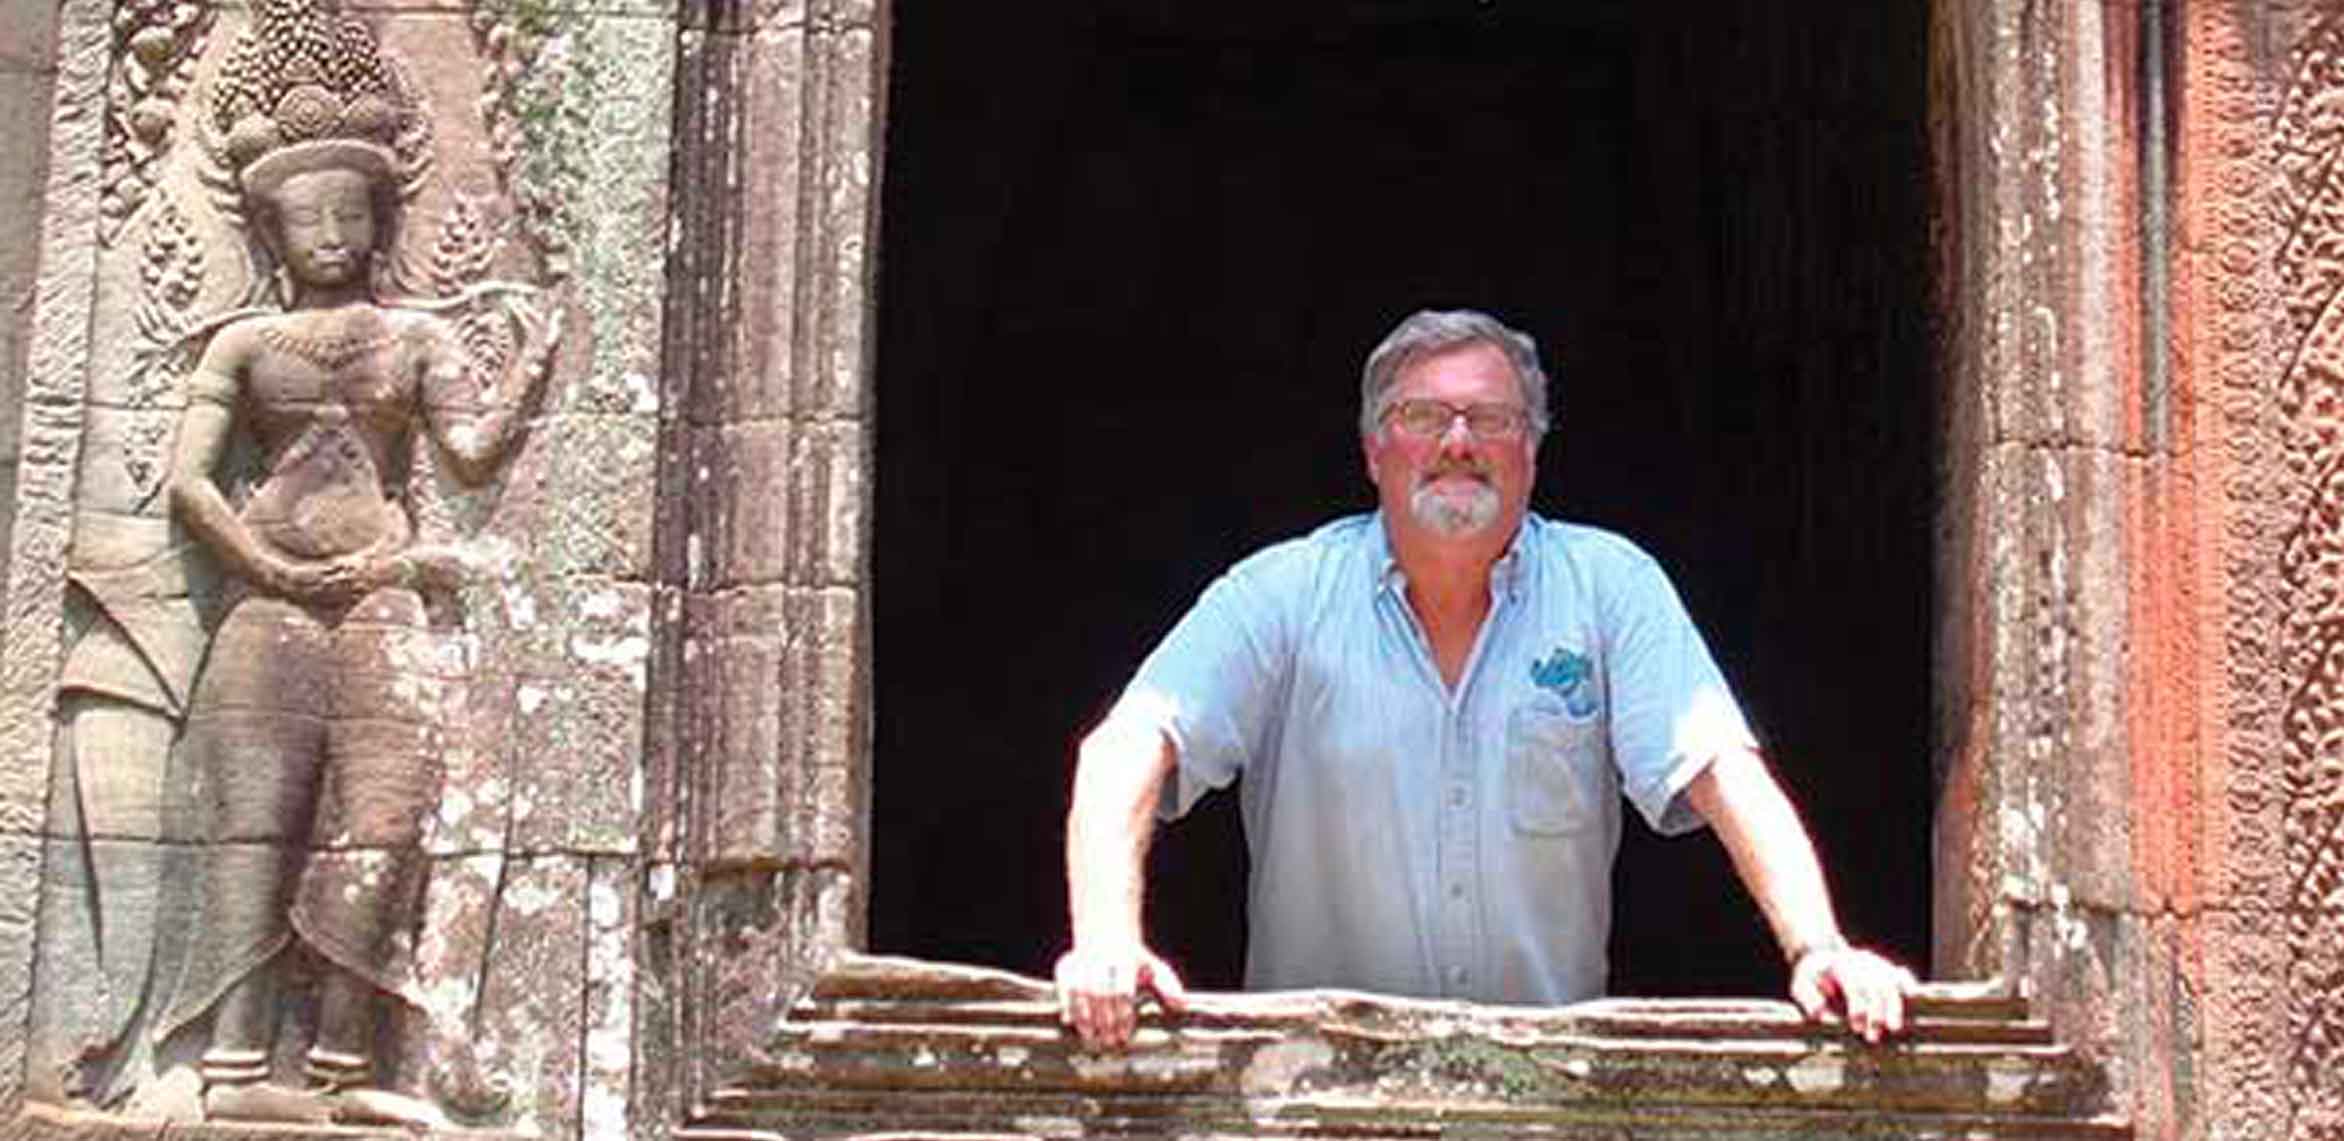 David visiting Angkor Wat